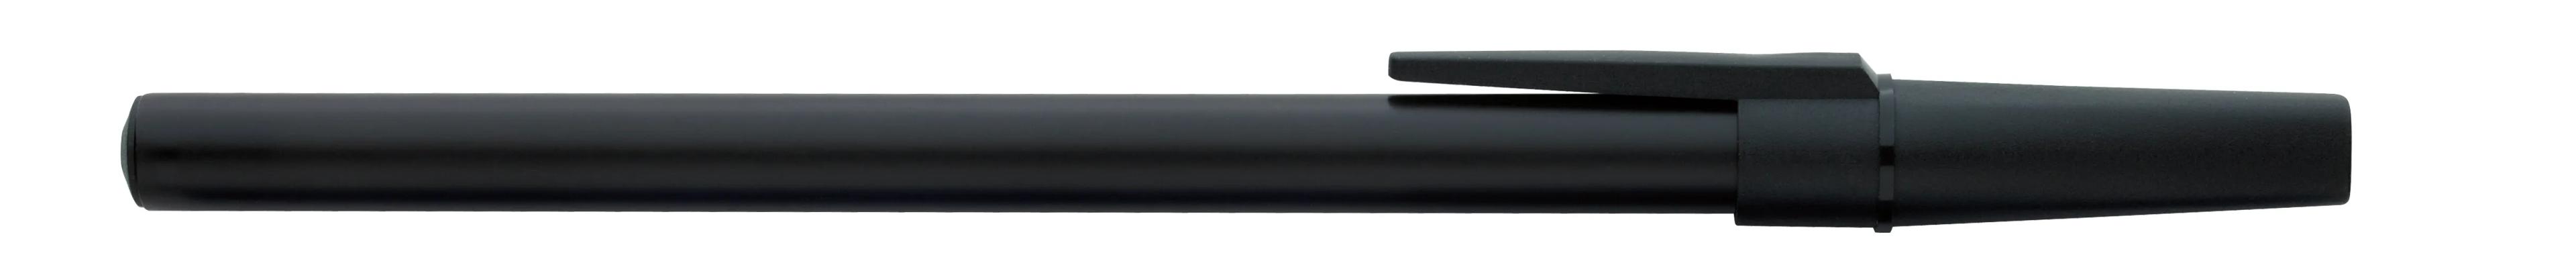 Corporate Promo Stick Pen 3 of 33